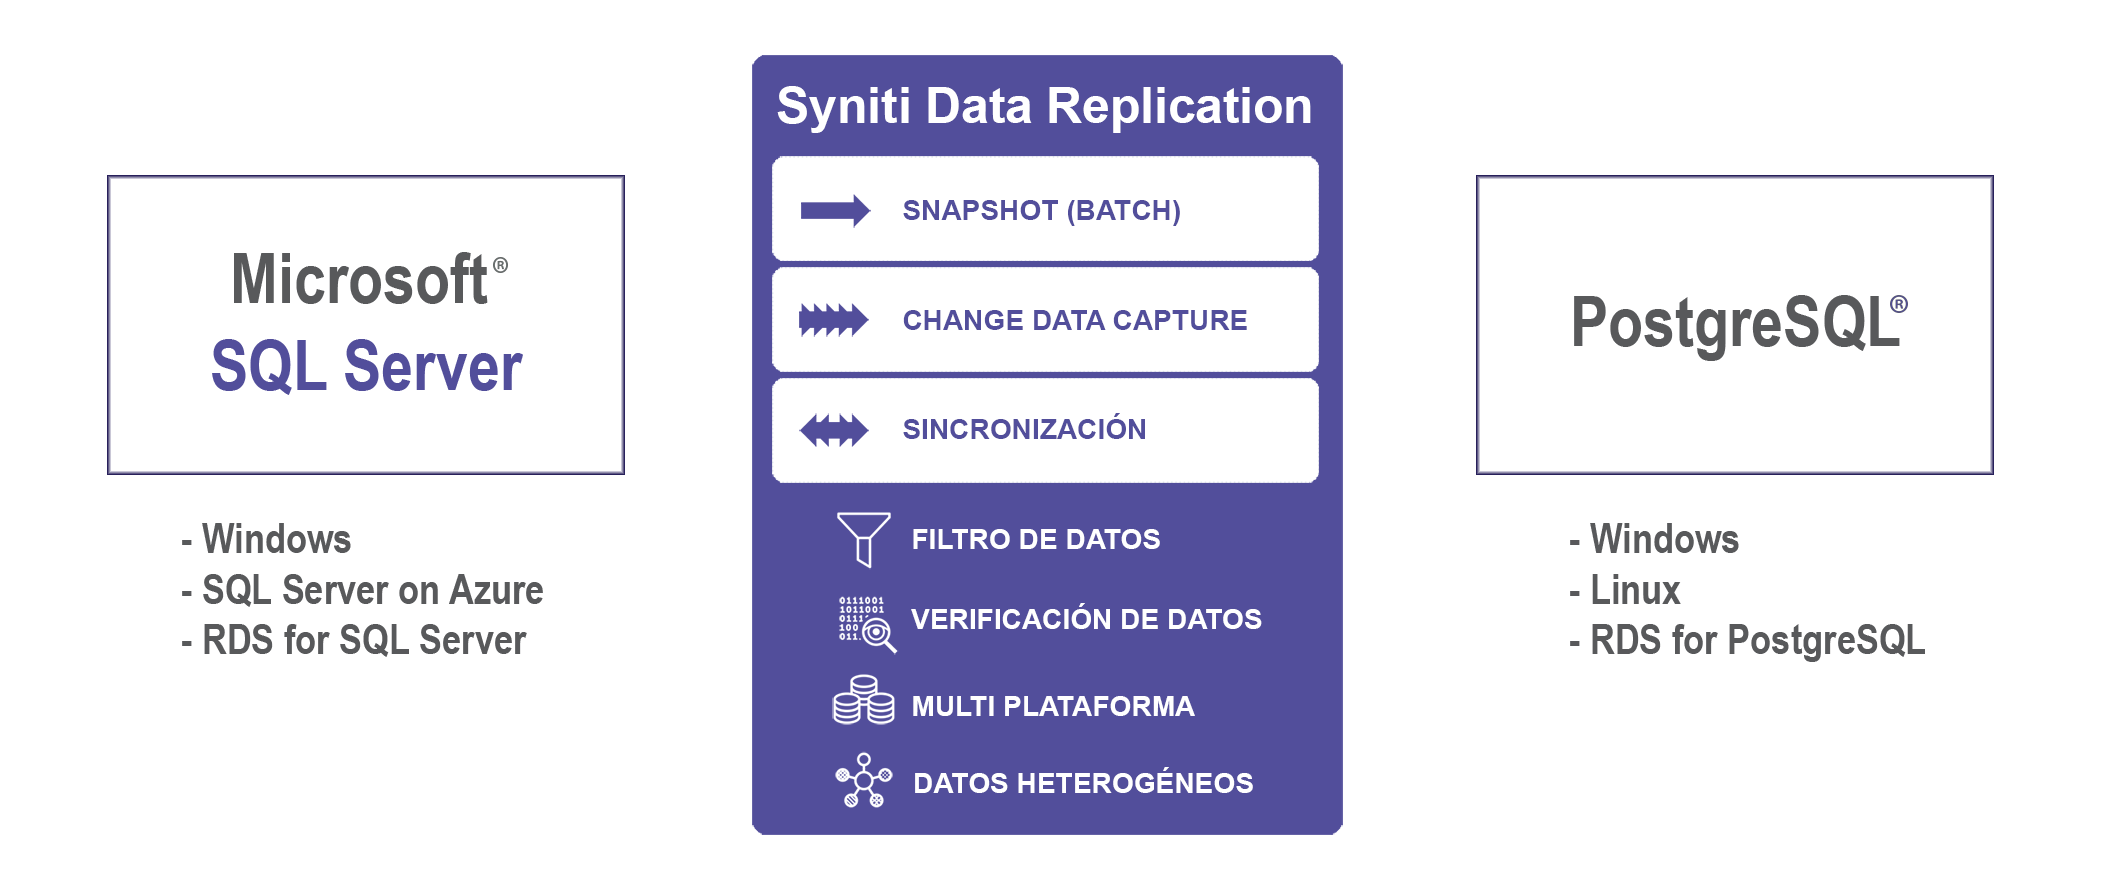 Replicación de datos en tiempo real entre SQL Server a PostgreSQL utilizando Syniti Data Replication DBMoto